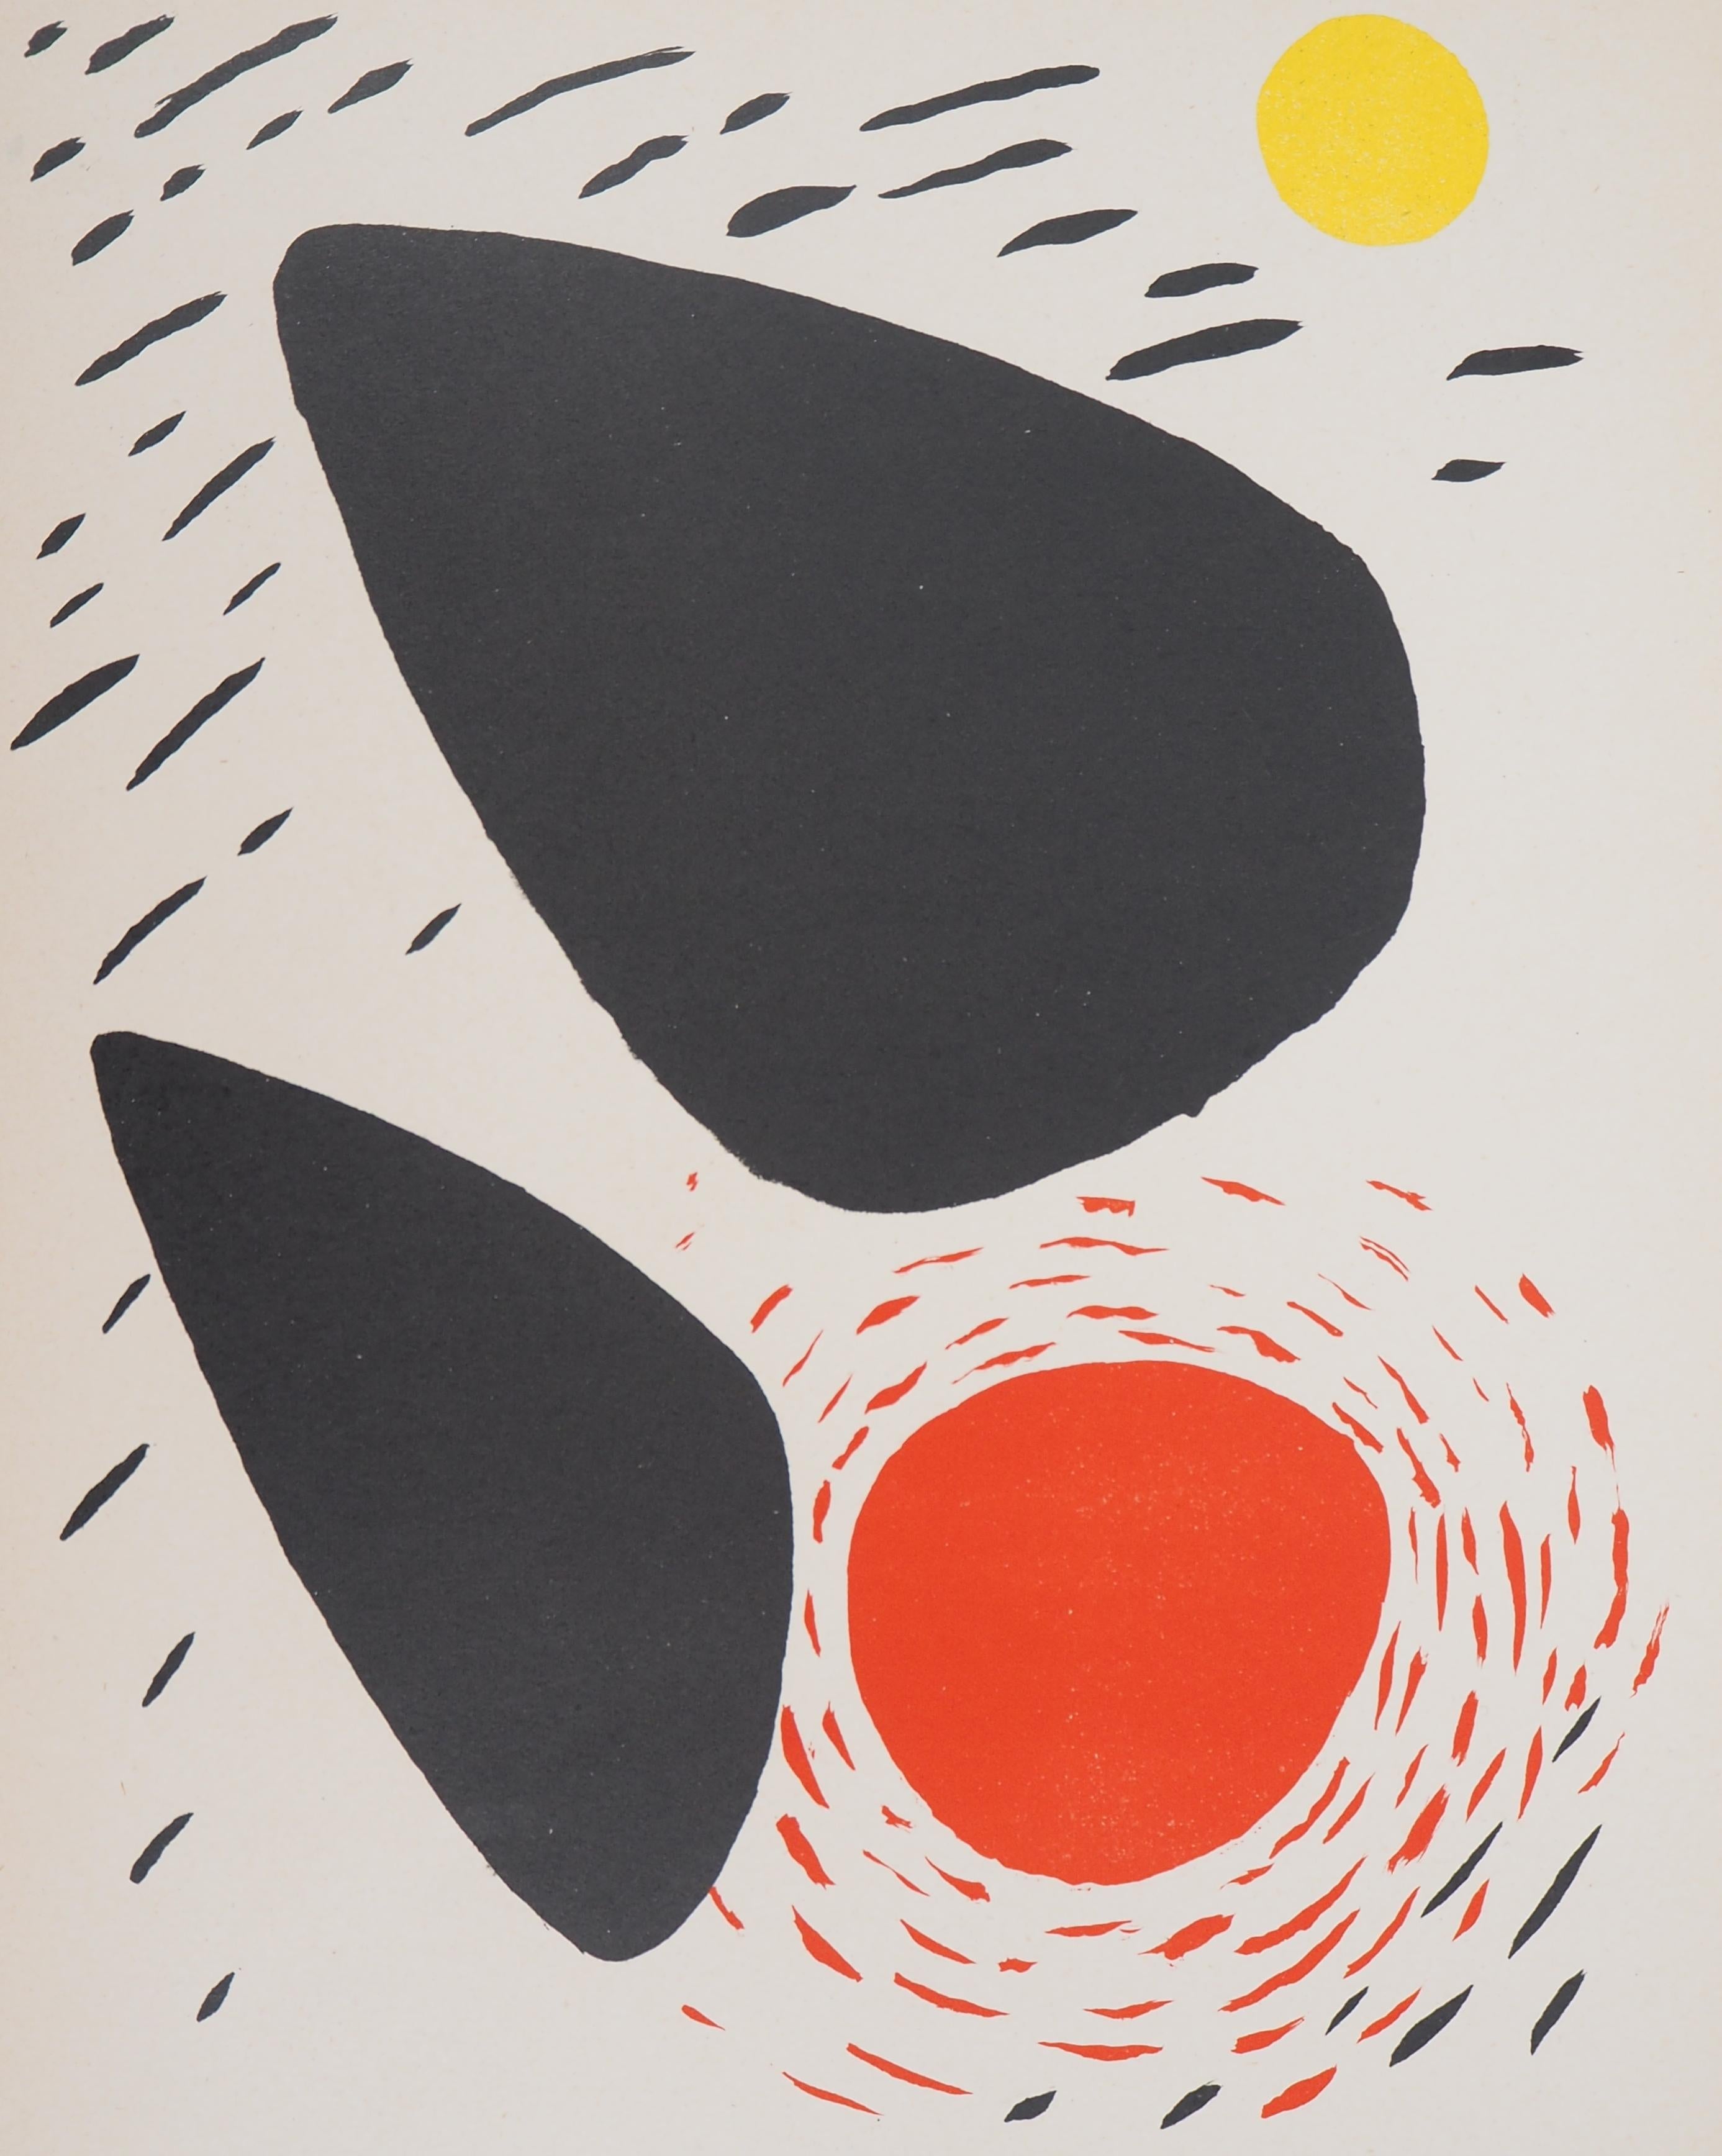 Rocks and Sun - Original lithograph - Mourlot, 1952 - Print by Alexander Calder